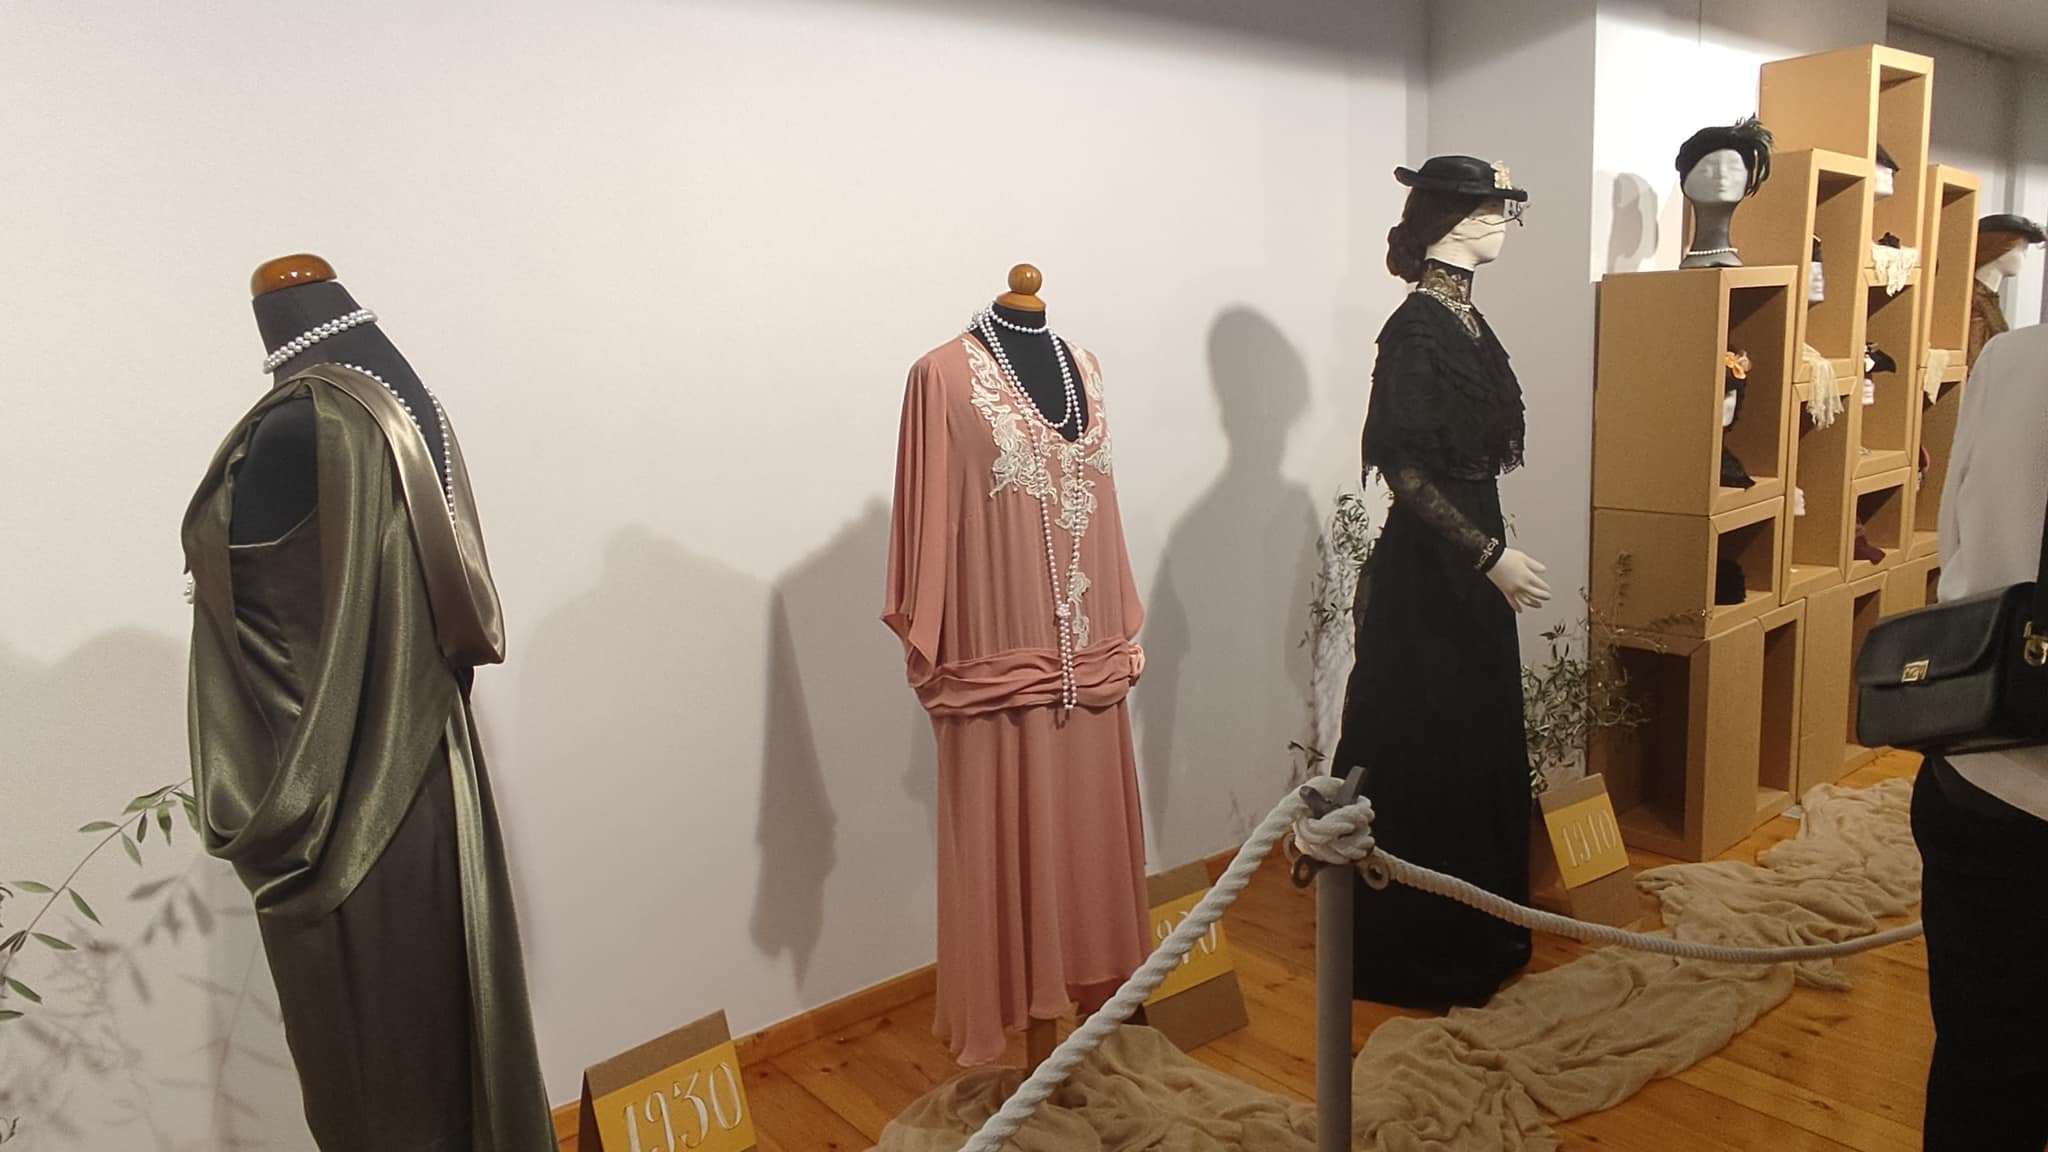 Κρήτη: Έτσι ντύνονταν οι γυναίκες στα τέλη του 19ου αιώνα – Πόσο άλλαξε η ενδυμασία στο πέρασμα των χρόνων